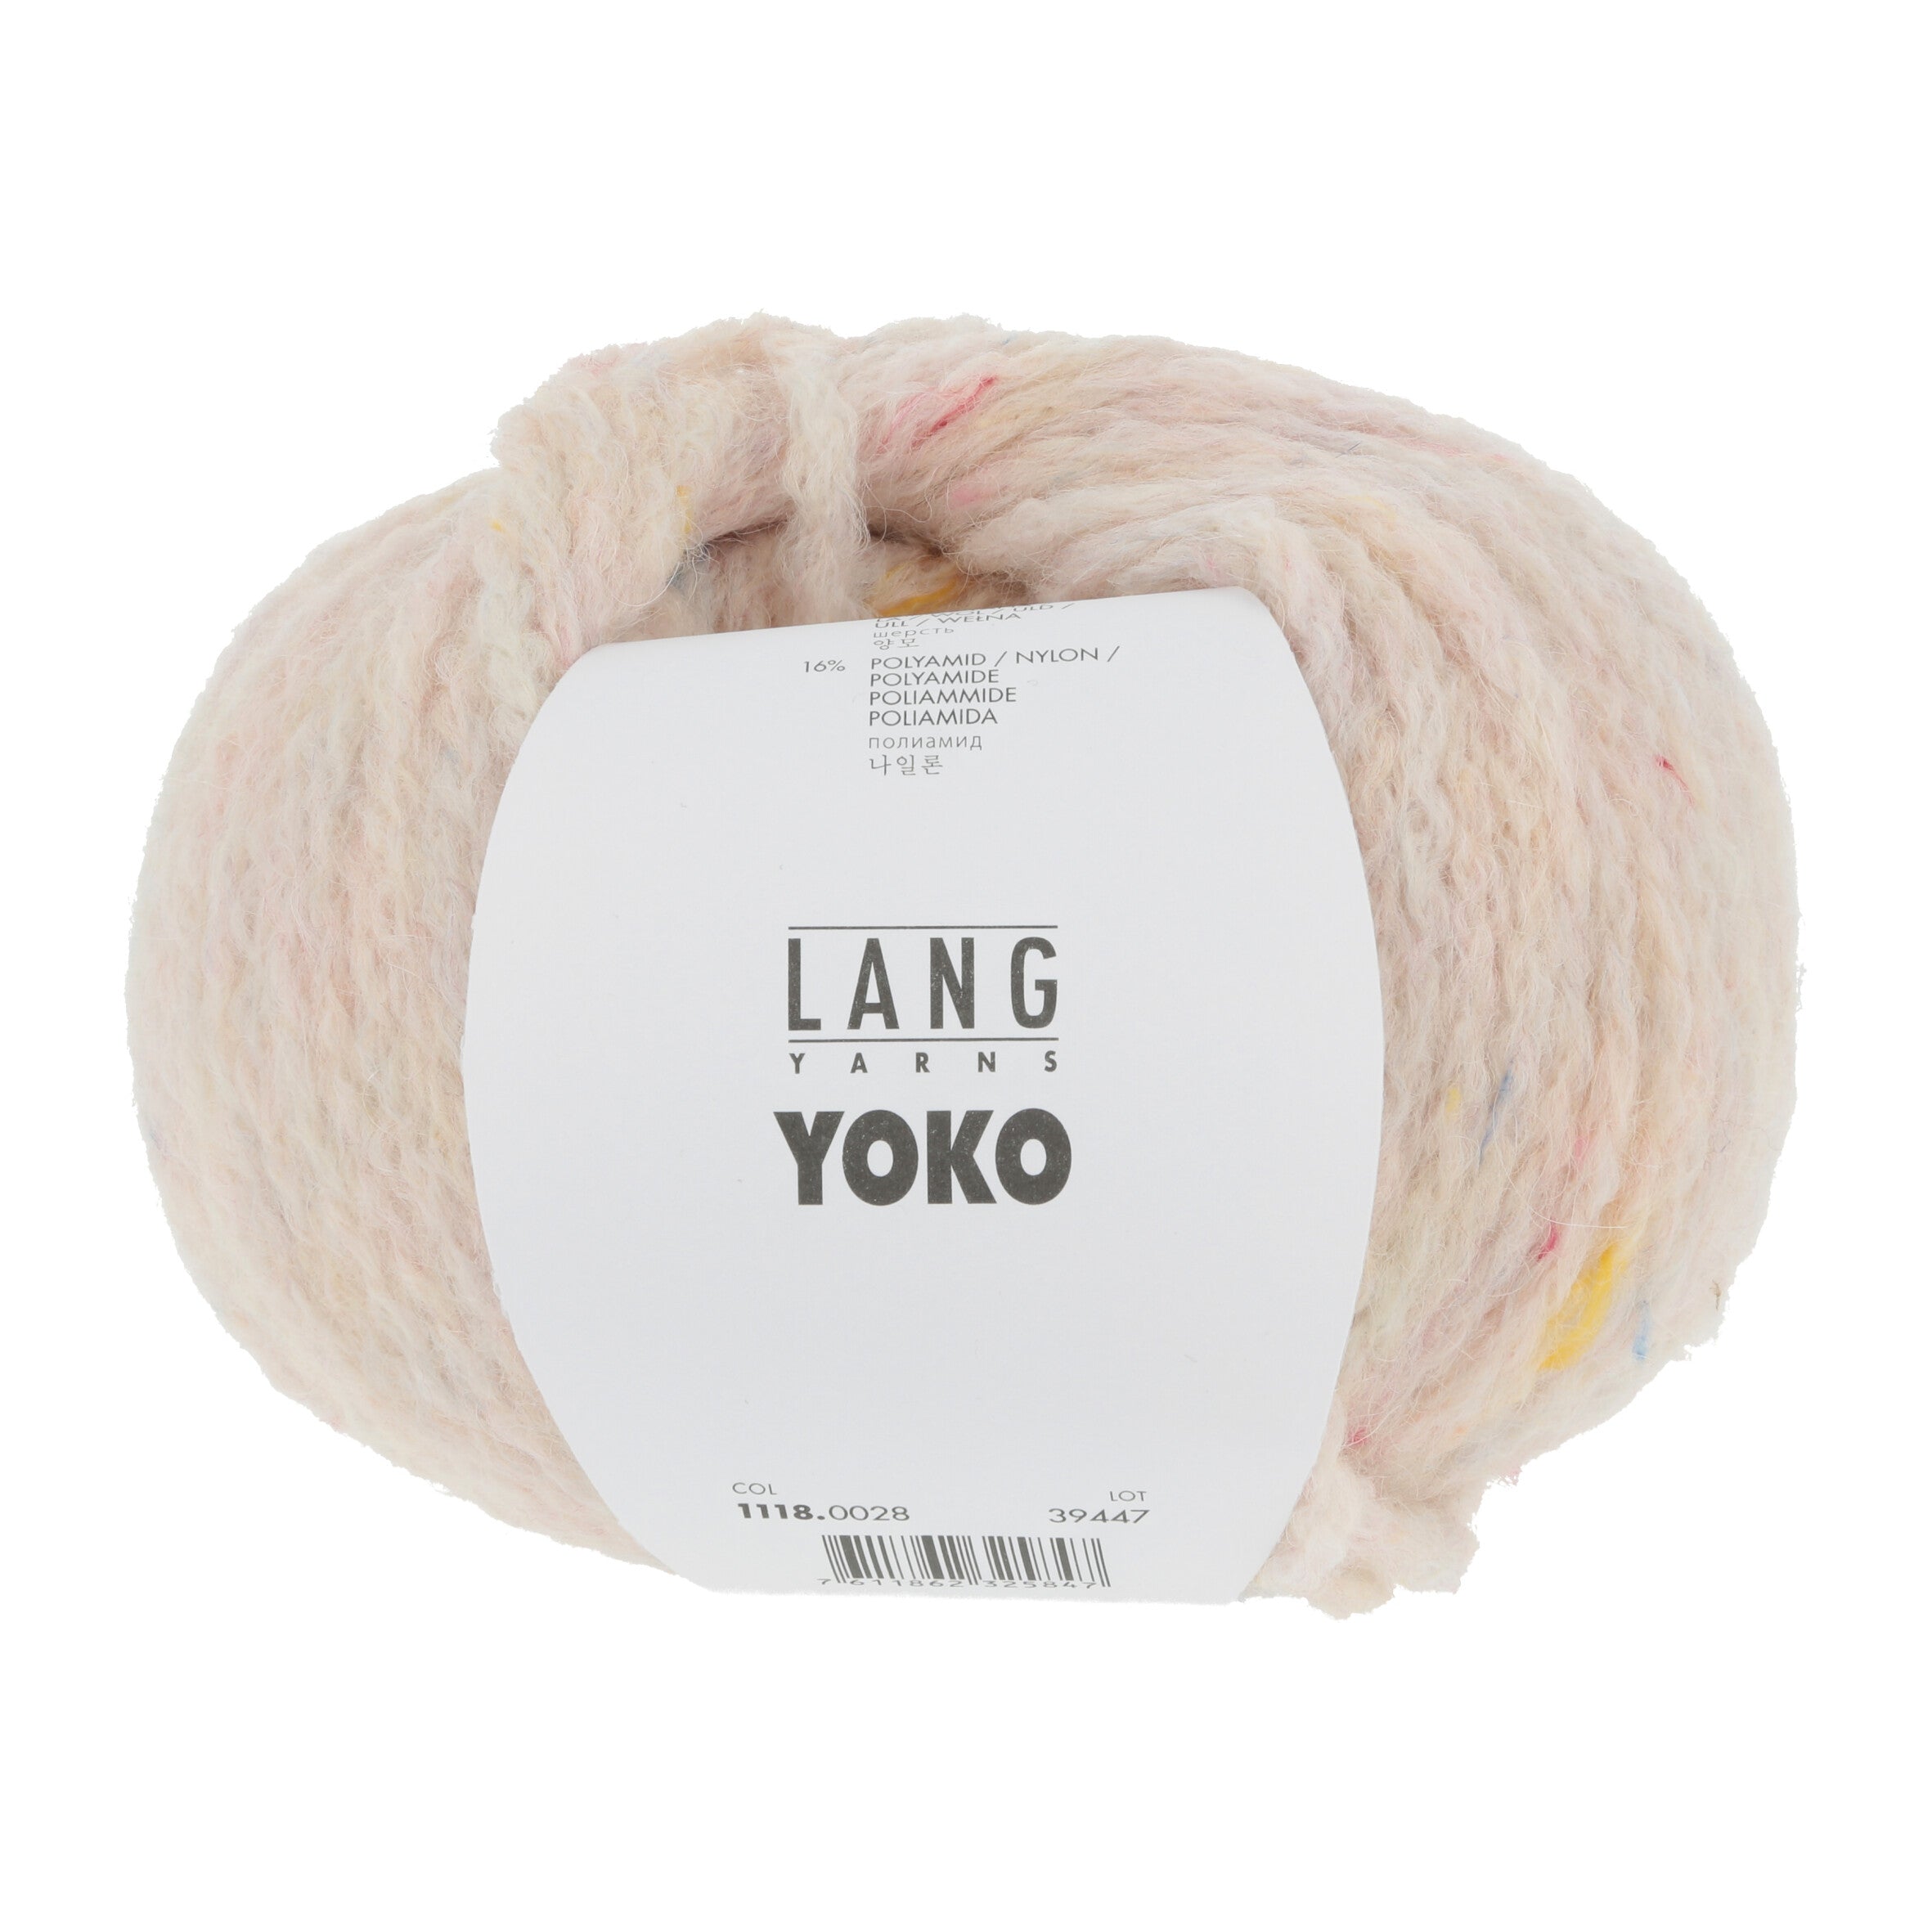 YOKO von LANG YARNS jetzt online kaufen bei OONIQUE